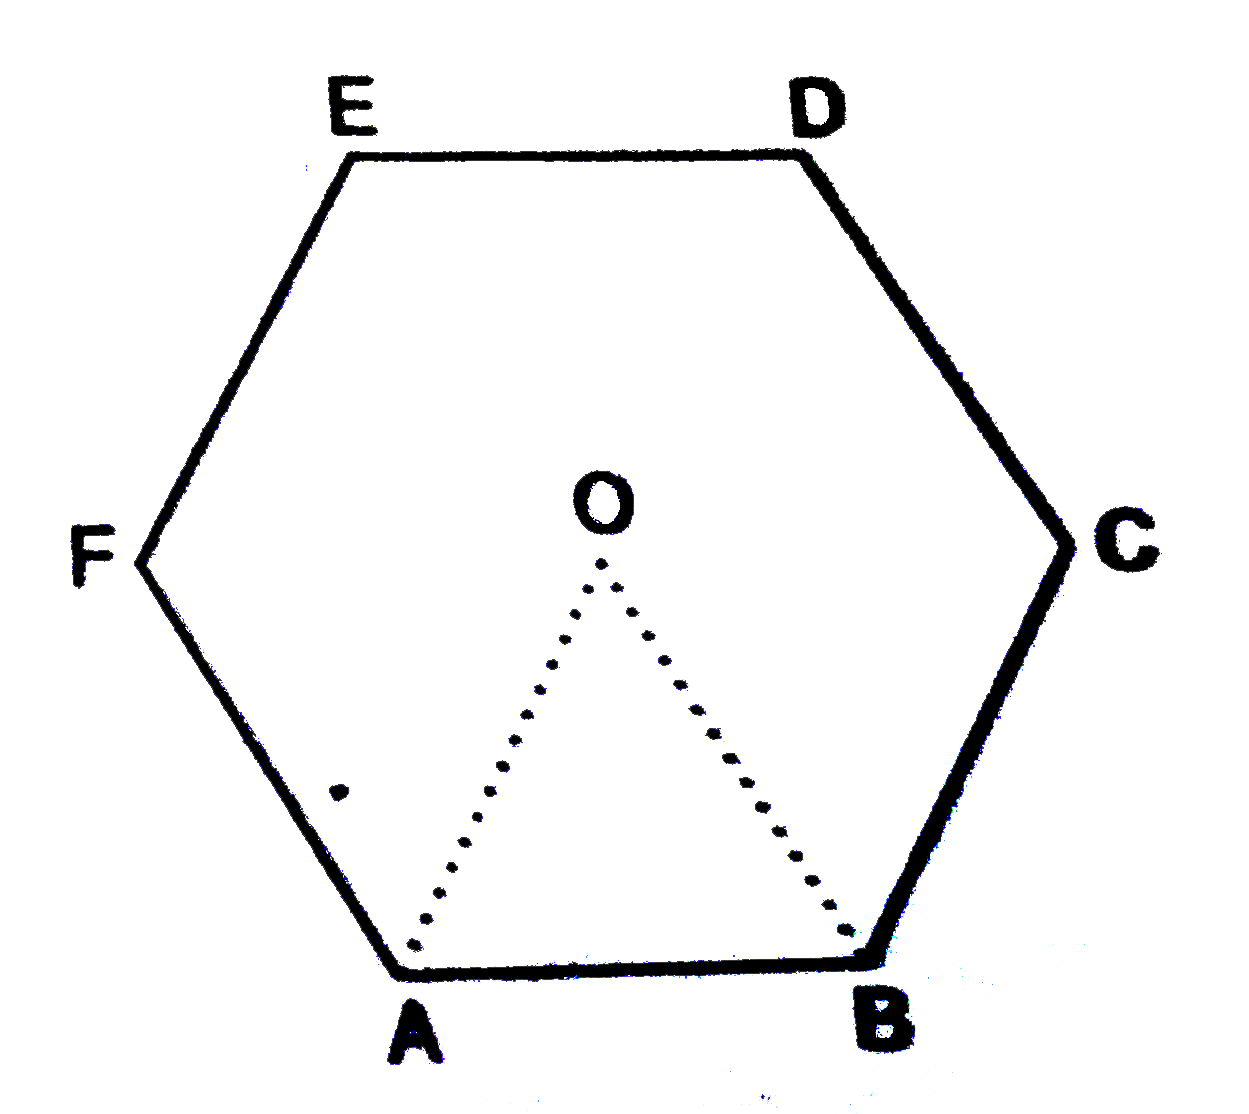 चित्र में, ABCDEF एक षटभुज है जिसका केन्द्र O है | यदि त्रिभुज OAB का क्षेत्रफल 9 वर्ग सेमी. हो, तो      एक वृत्त जिसके अन्दर षटभुज बना हो, का क्षेत्रफल ज्ञात कीजिए |